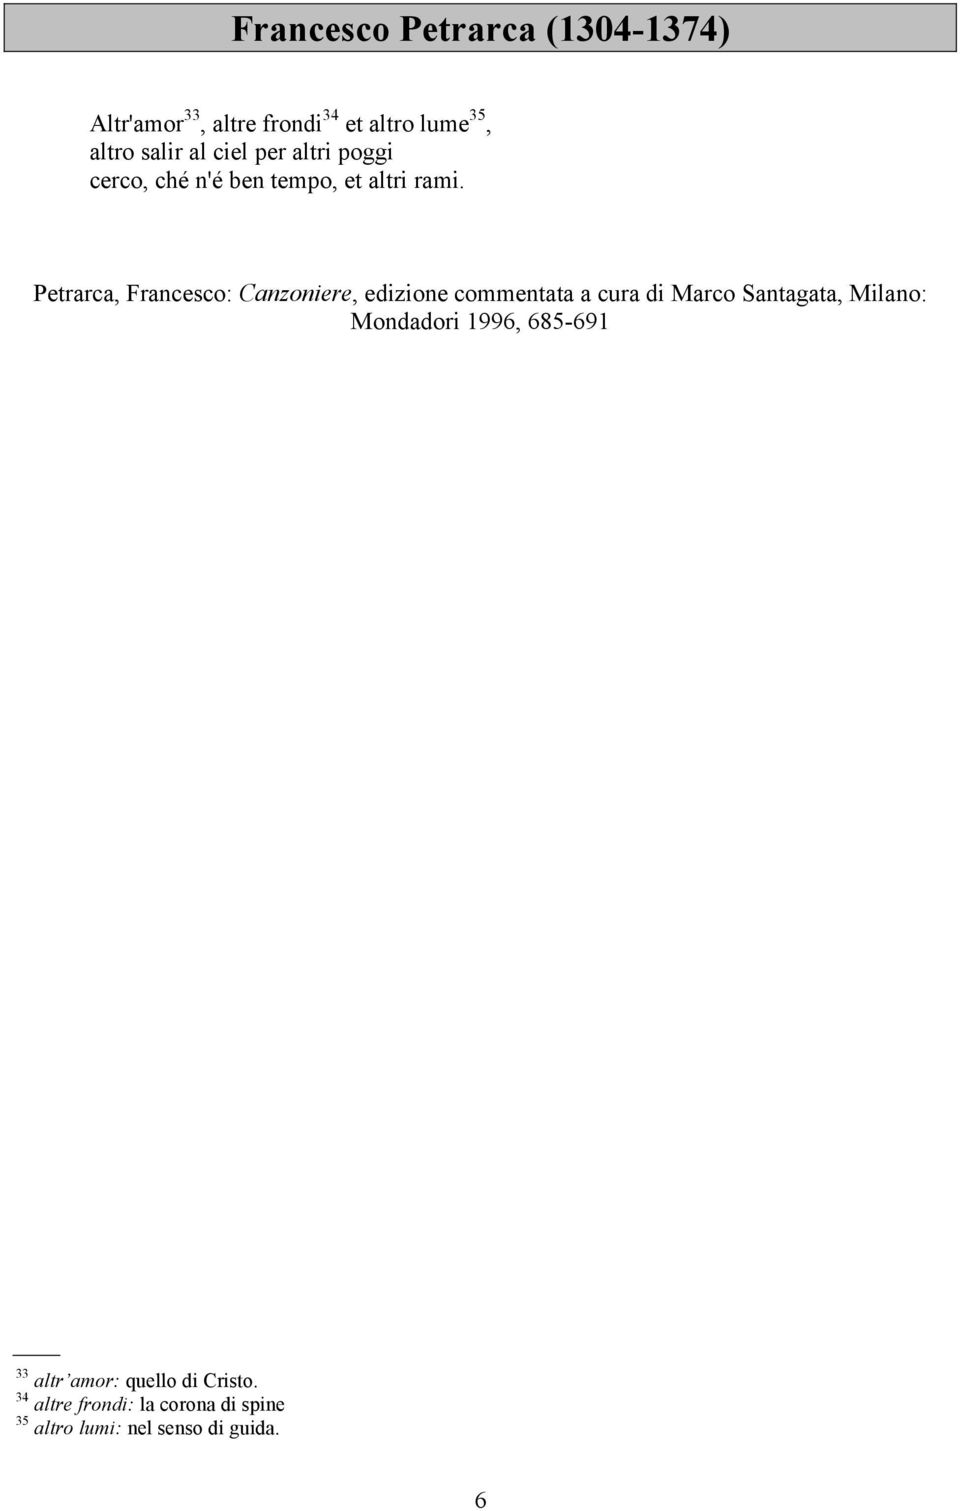 Petrarca, Francesco: Canzoniere, edizione commentata a cura di Marco Santagata, Milano: